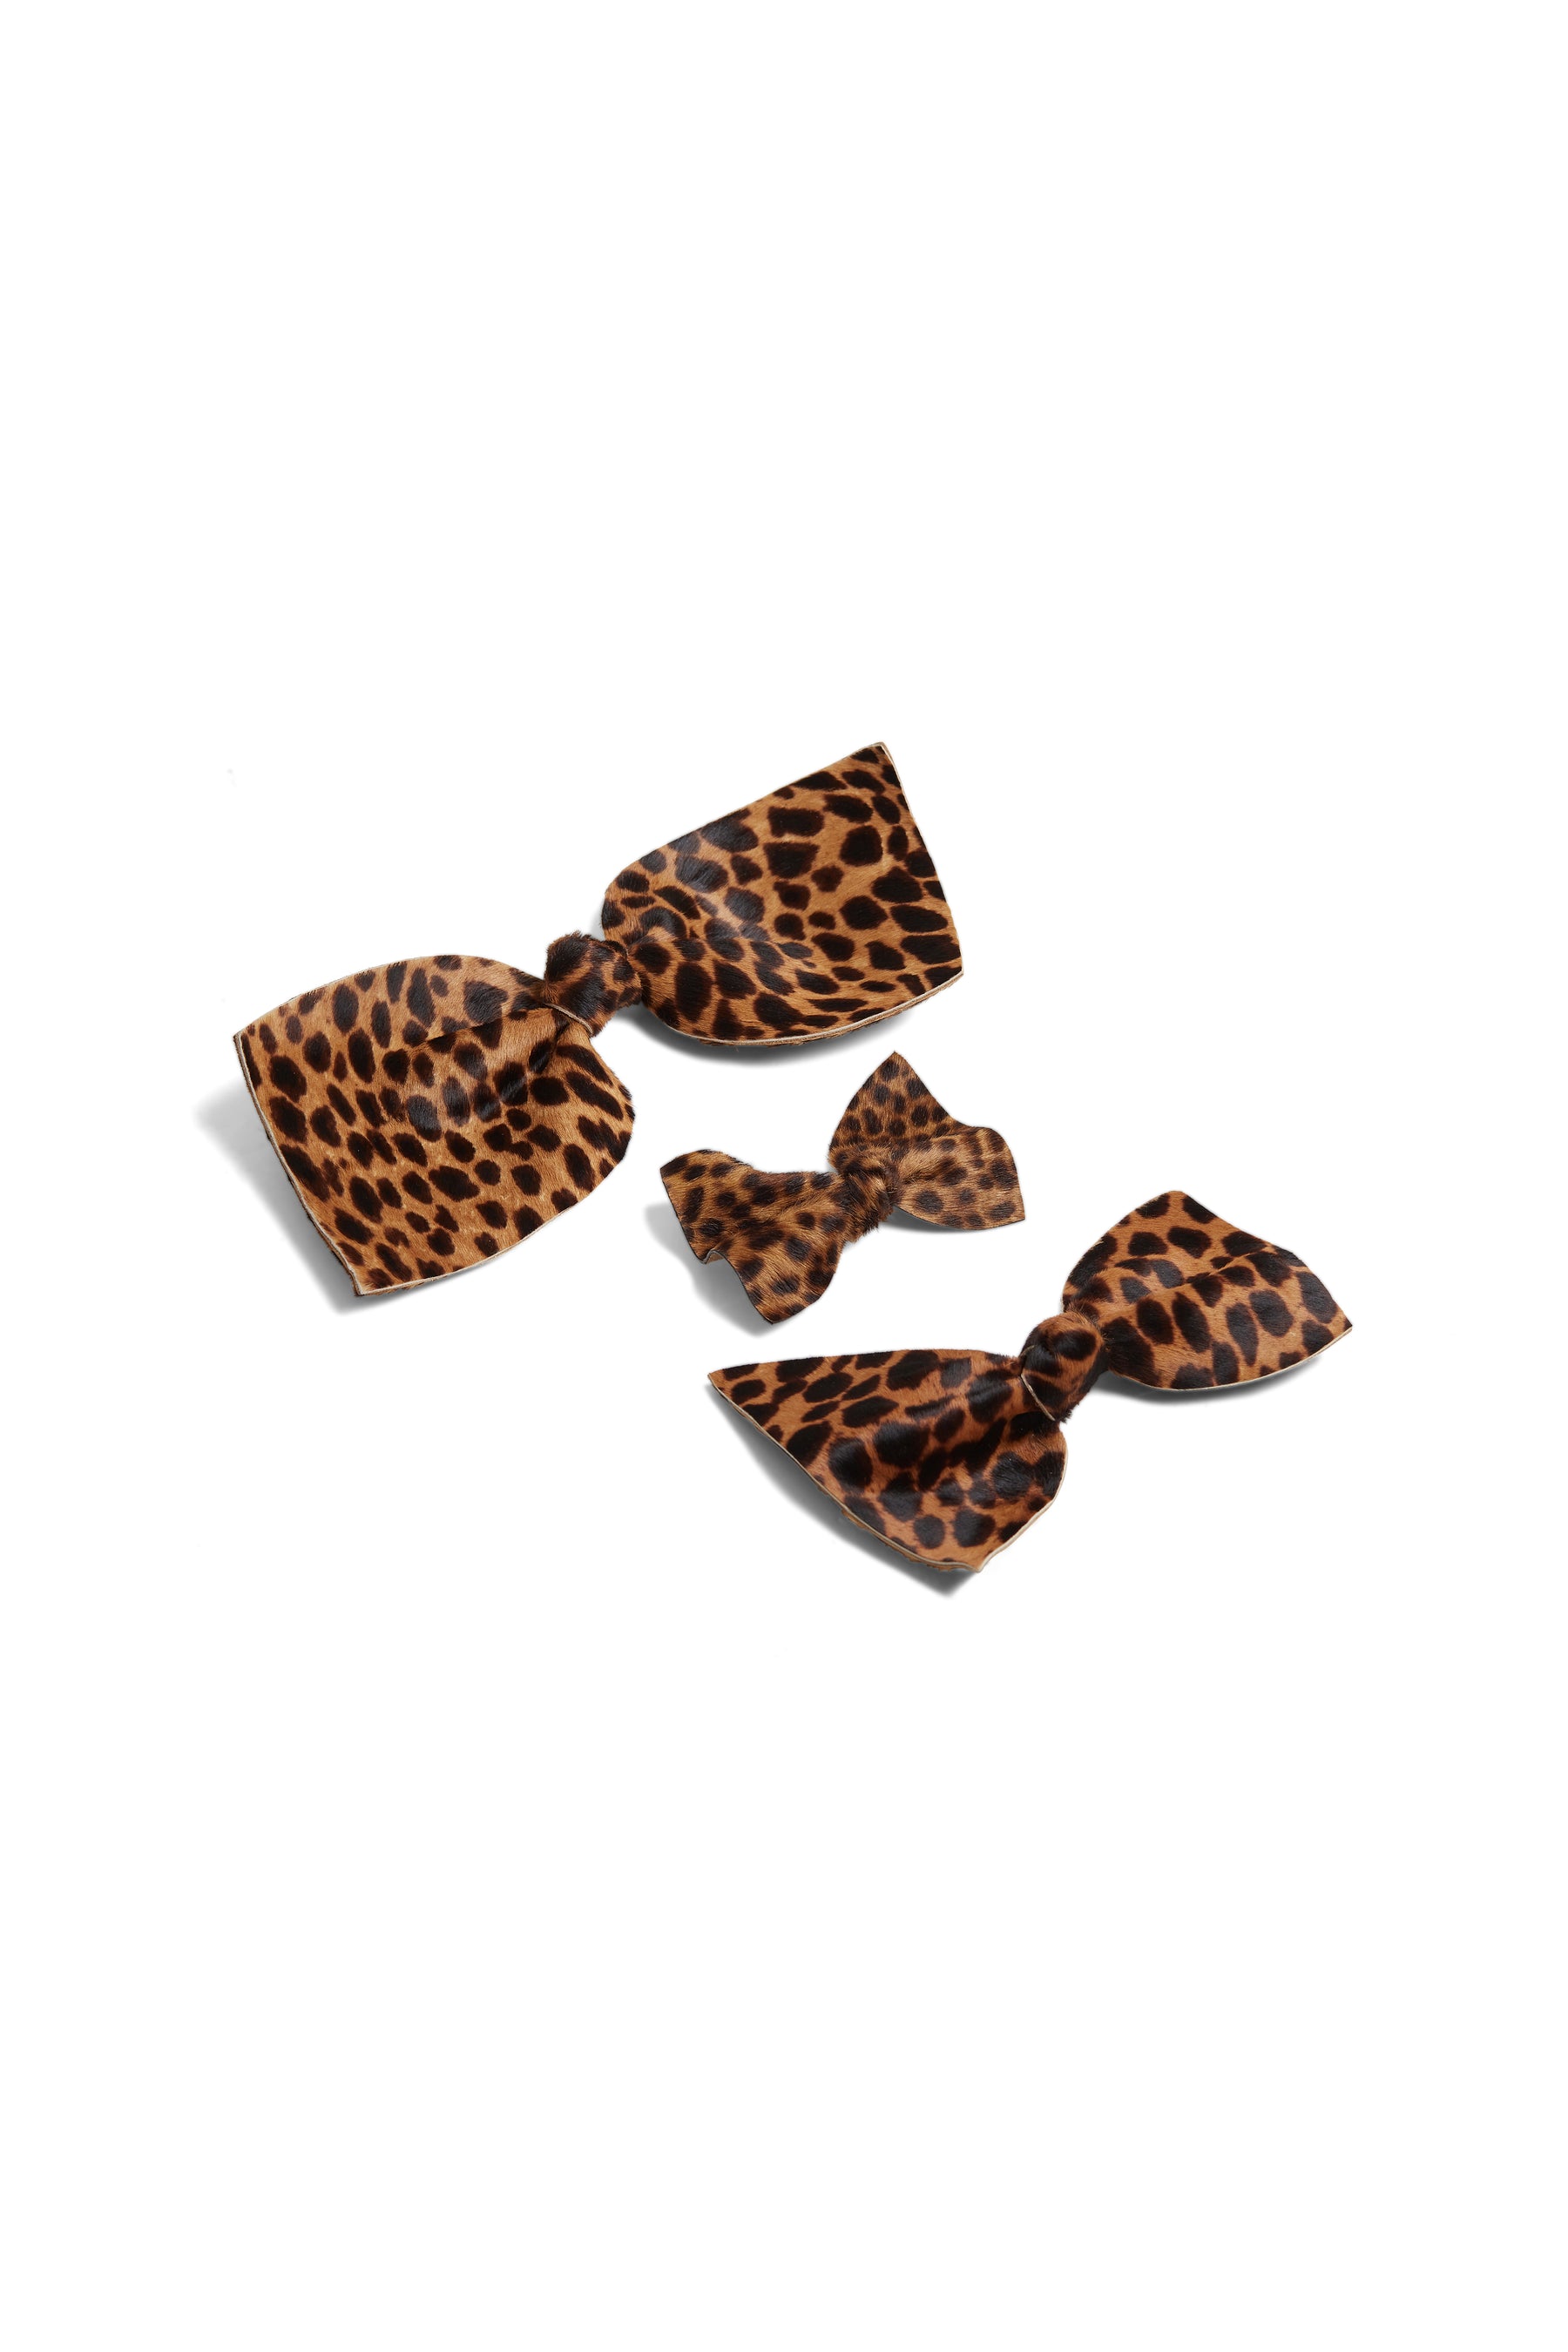 Petite barrette noeud en cuir léopard